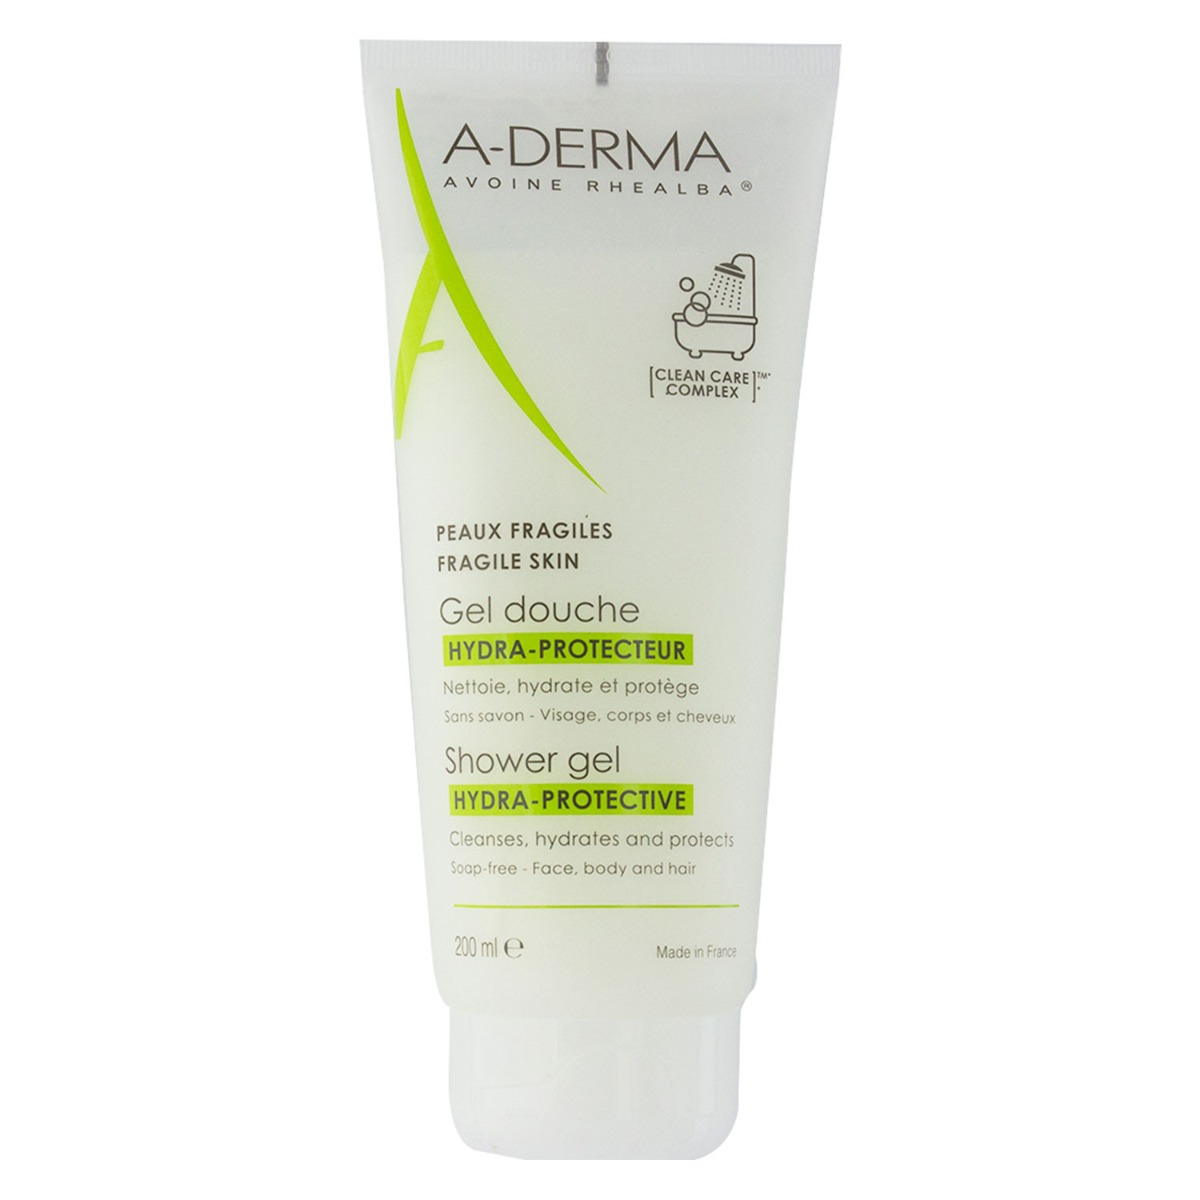 Gel rửa mặt A-Derma dịu nhẹ cho da 200ml Shower Gel Hydra-Protective